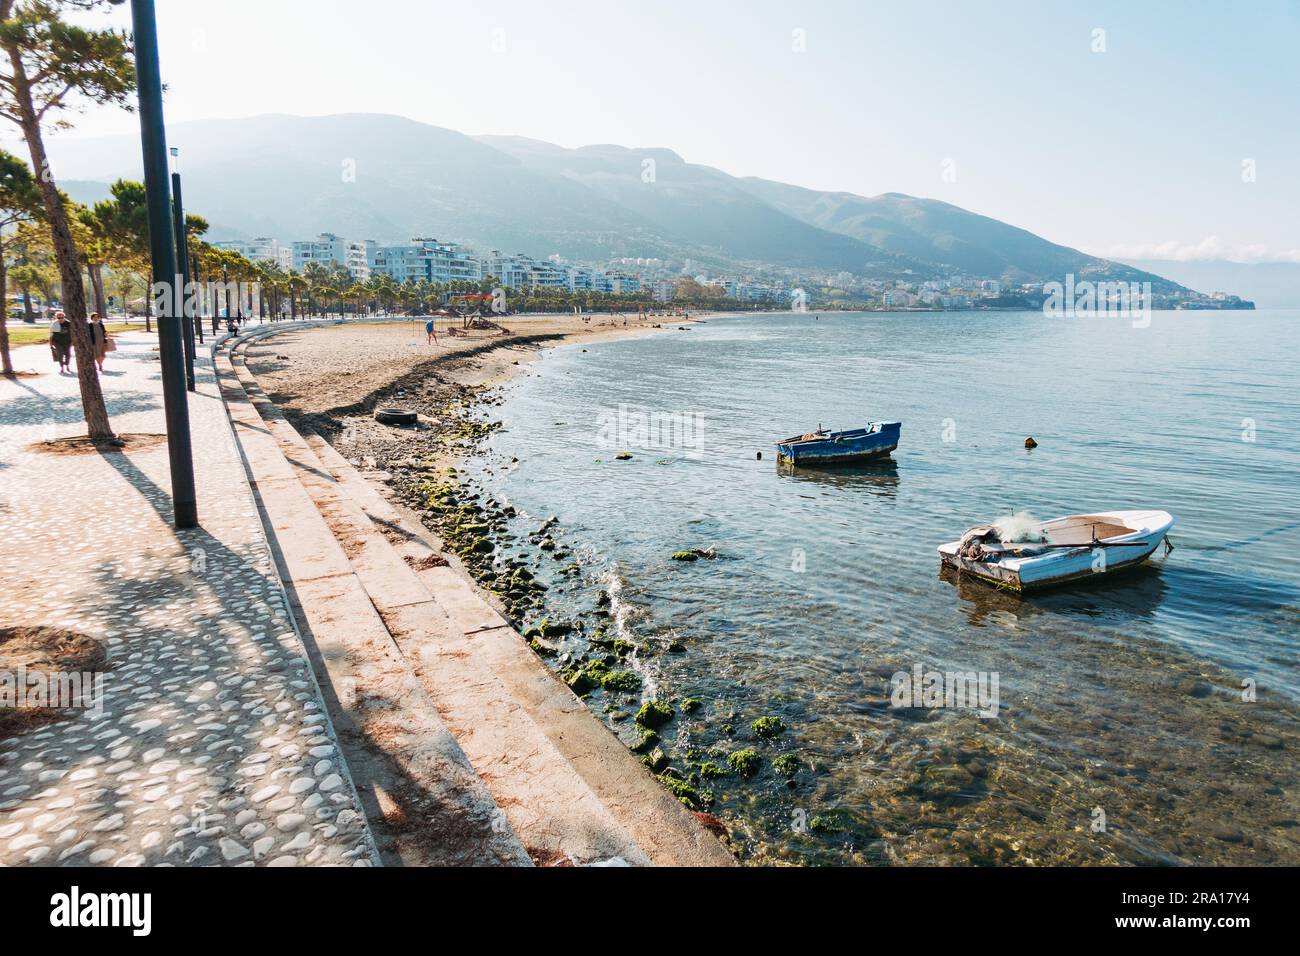 Una piazza fronte mare appena completata finanziata dall'Unione europea nella città costiera di Vlorë, nel sud dell'Albania Foto Stock